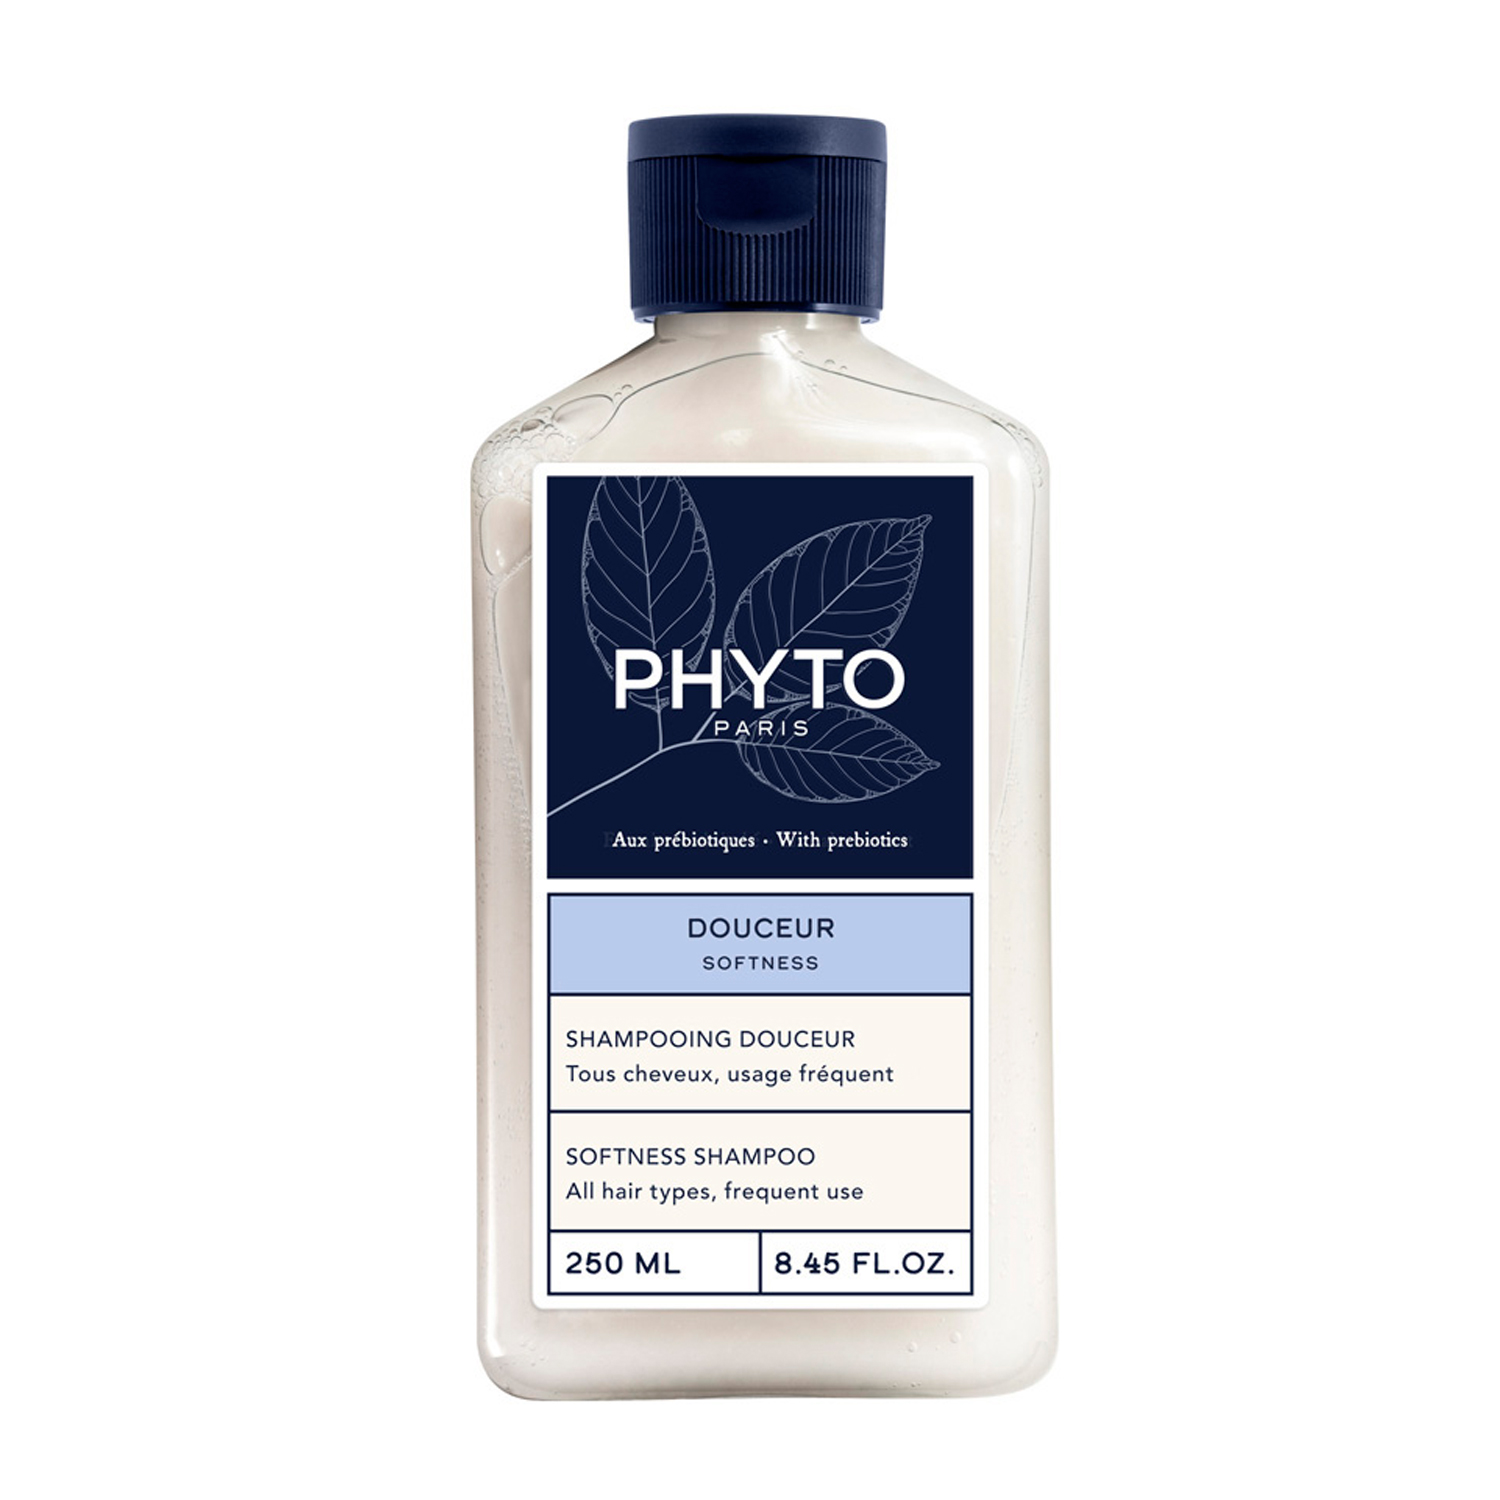 PHYTO SOFTNESS смягчающий шампунь для волос 250мл phyto softness смягчающий шампунь для волос 500 мл